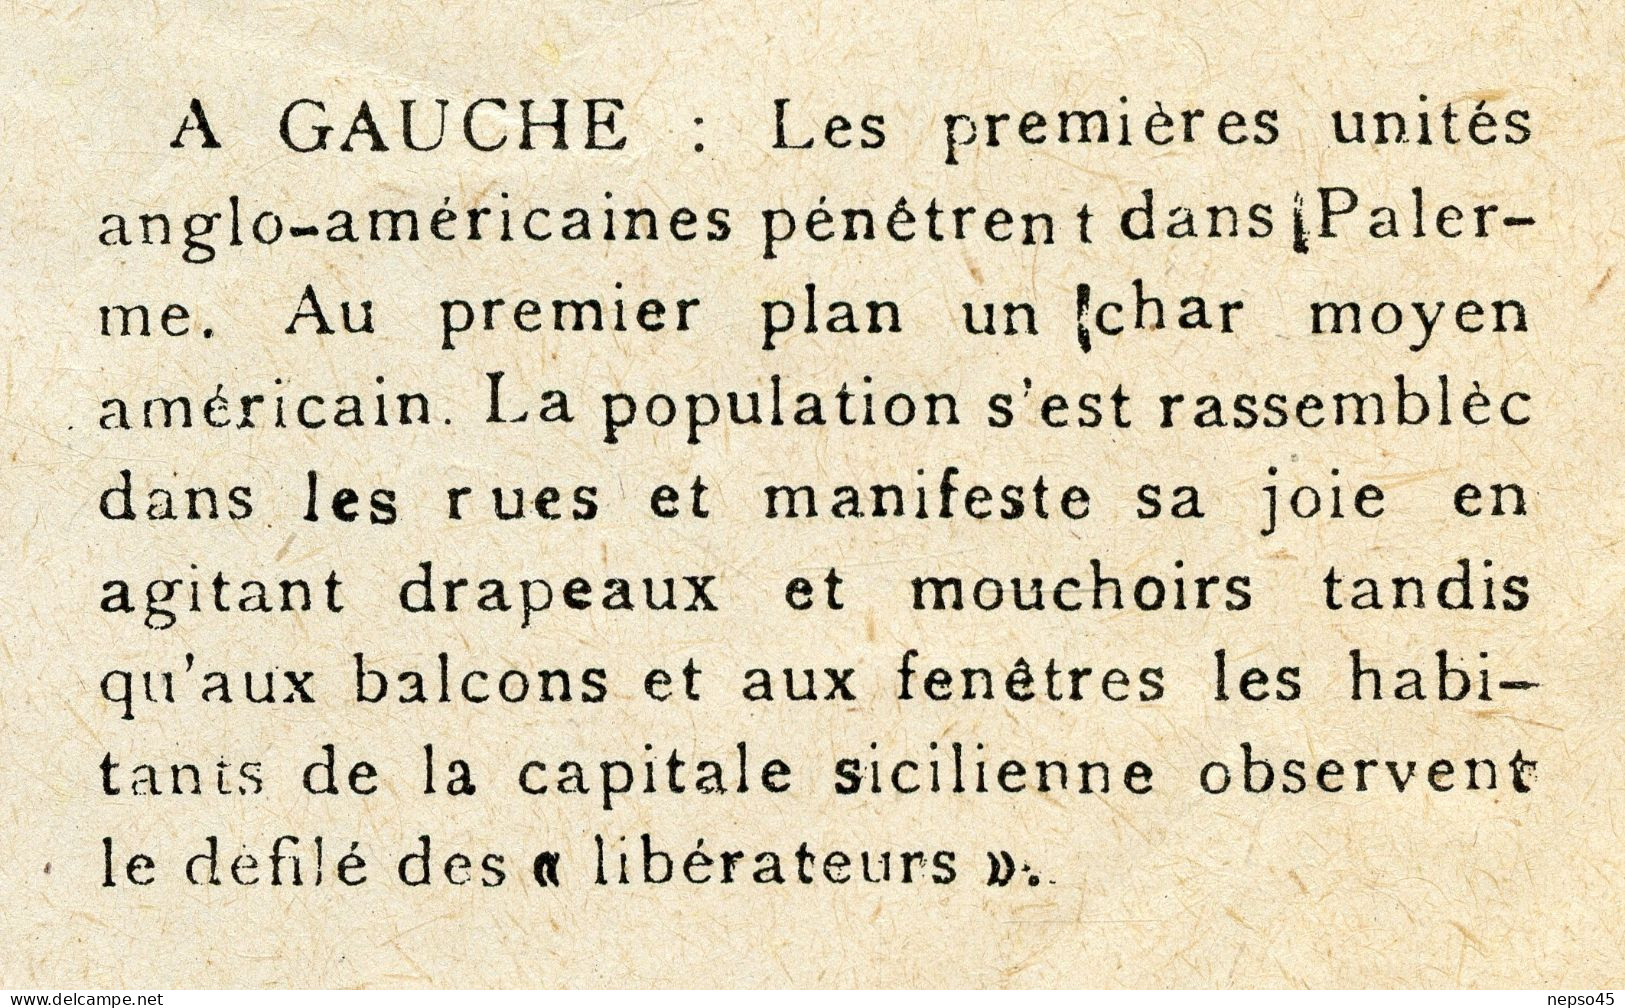 Journal.Organe des Mouvements de Résistance Uni.Edition Zone Sud.année 1943.Libération Numéro spécial.Propagande Alliés.